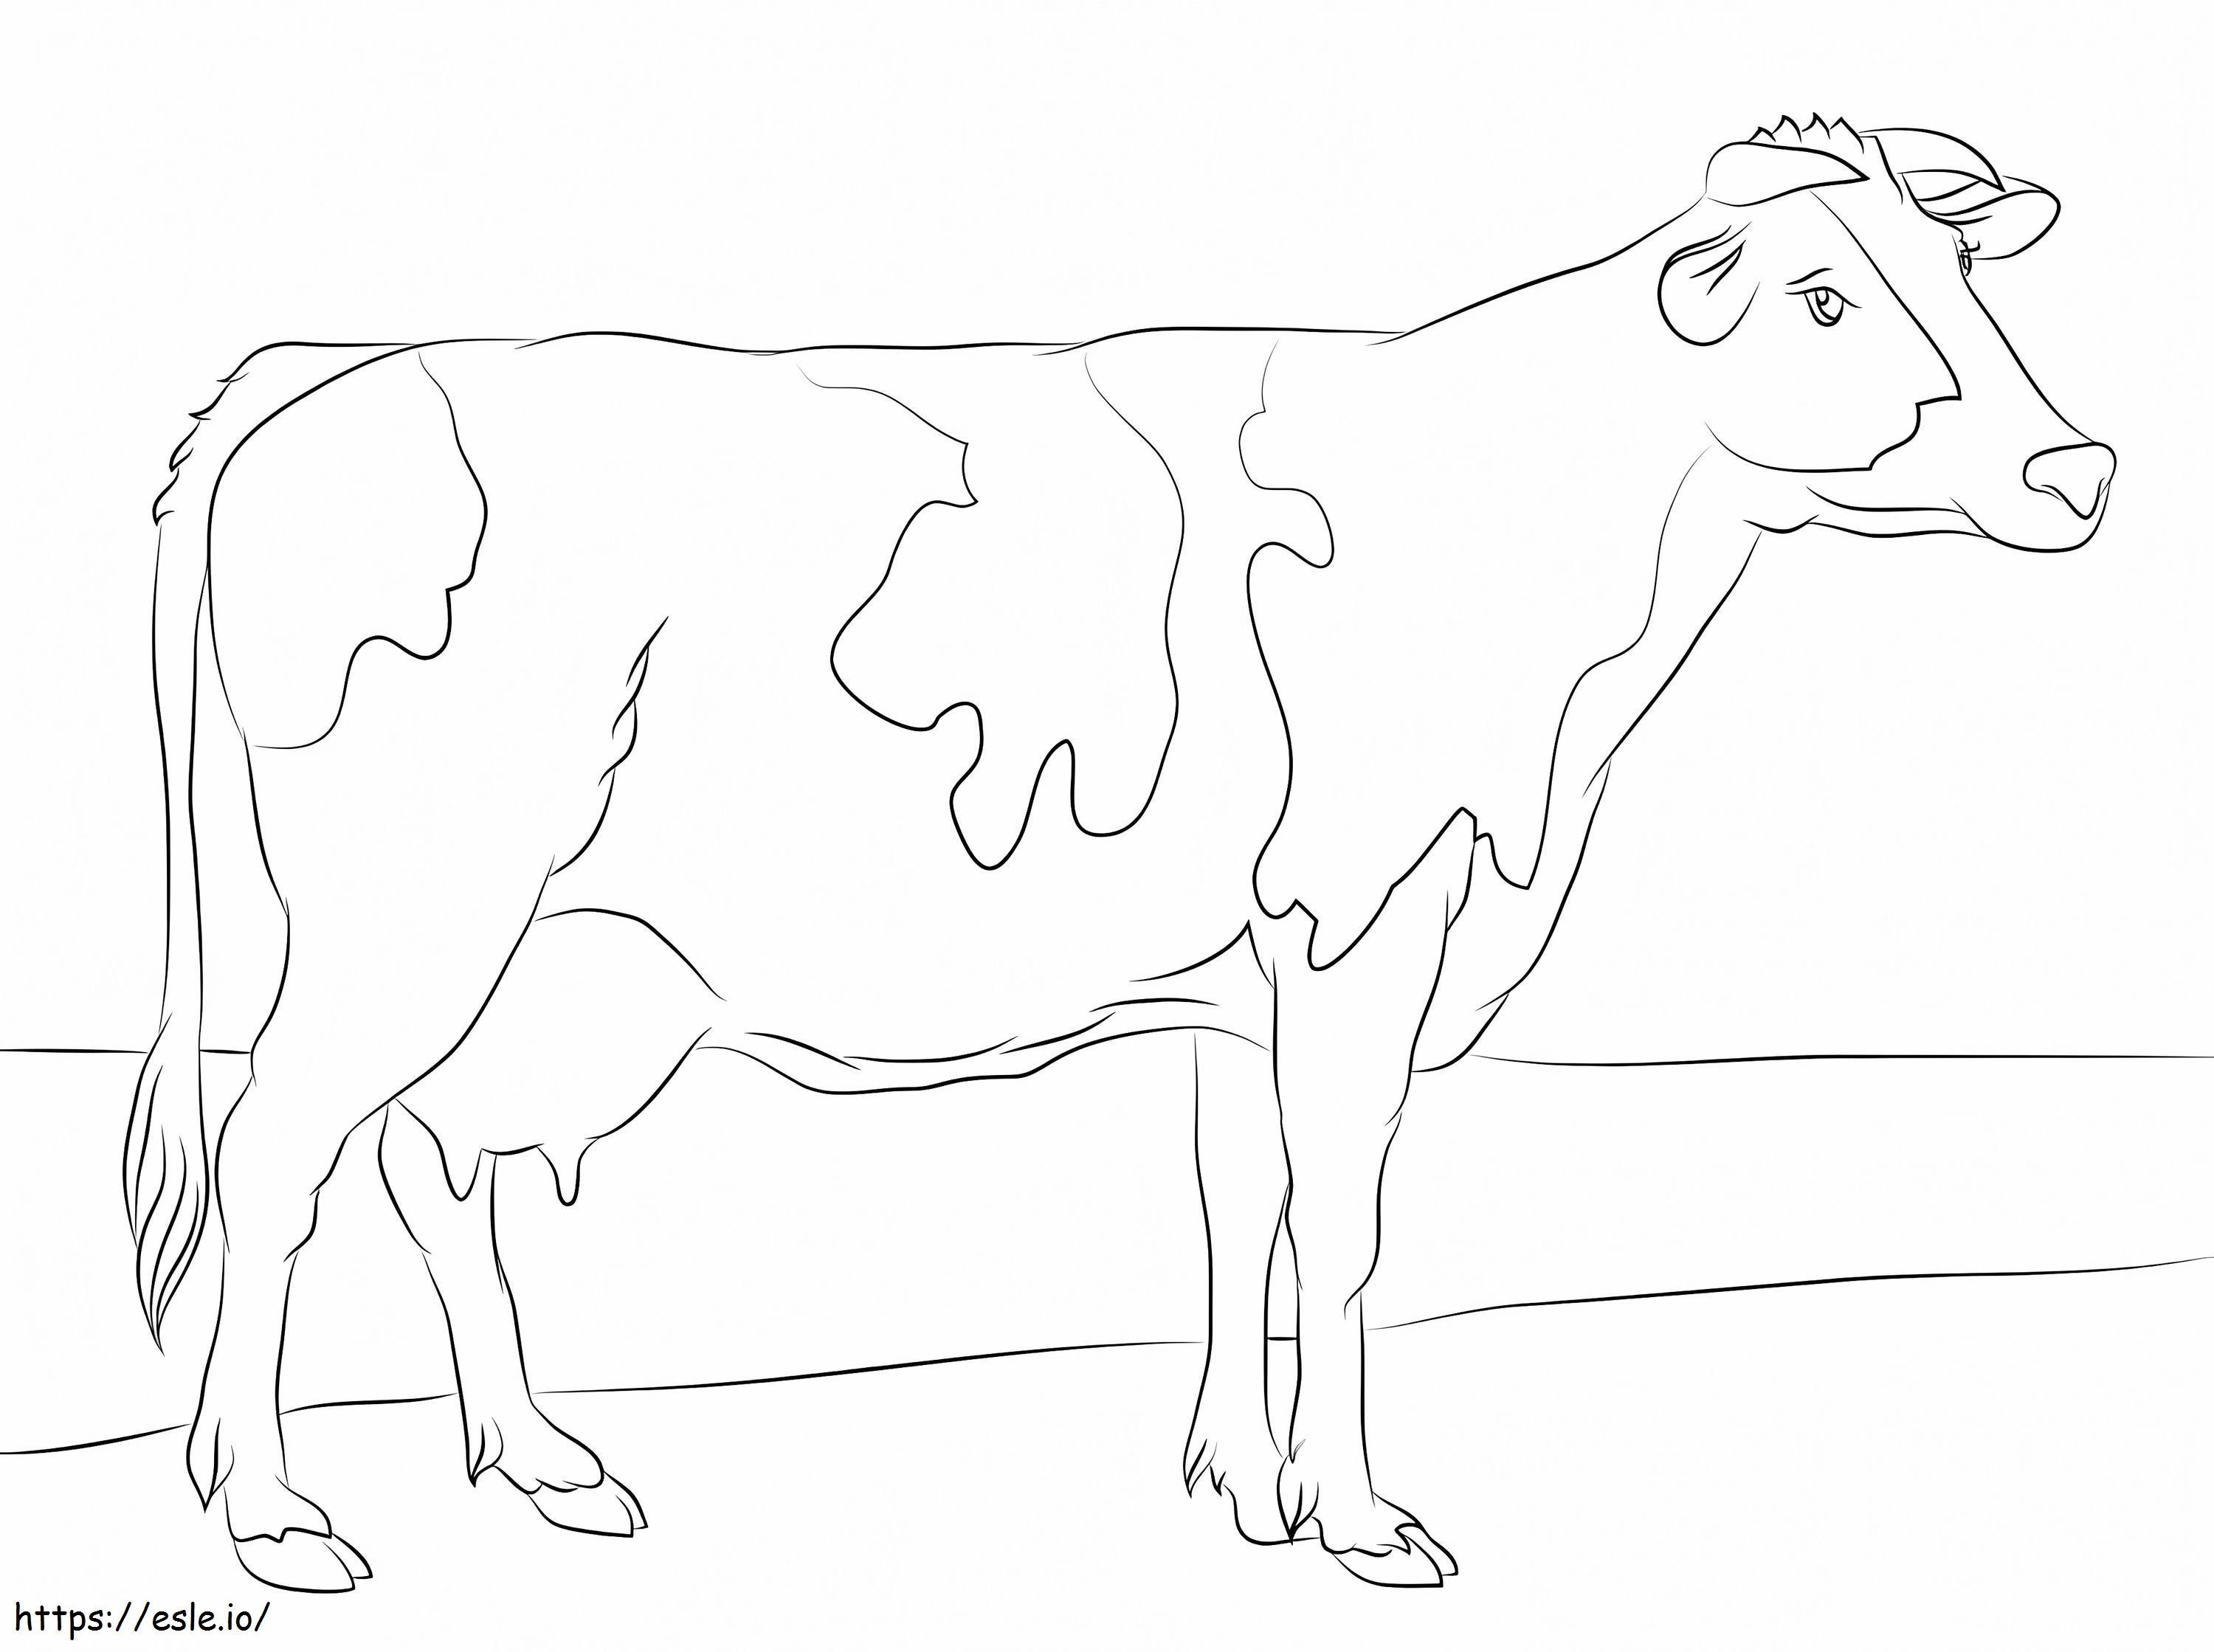 Coloriage Vache Holstein à imprimer dessin